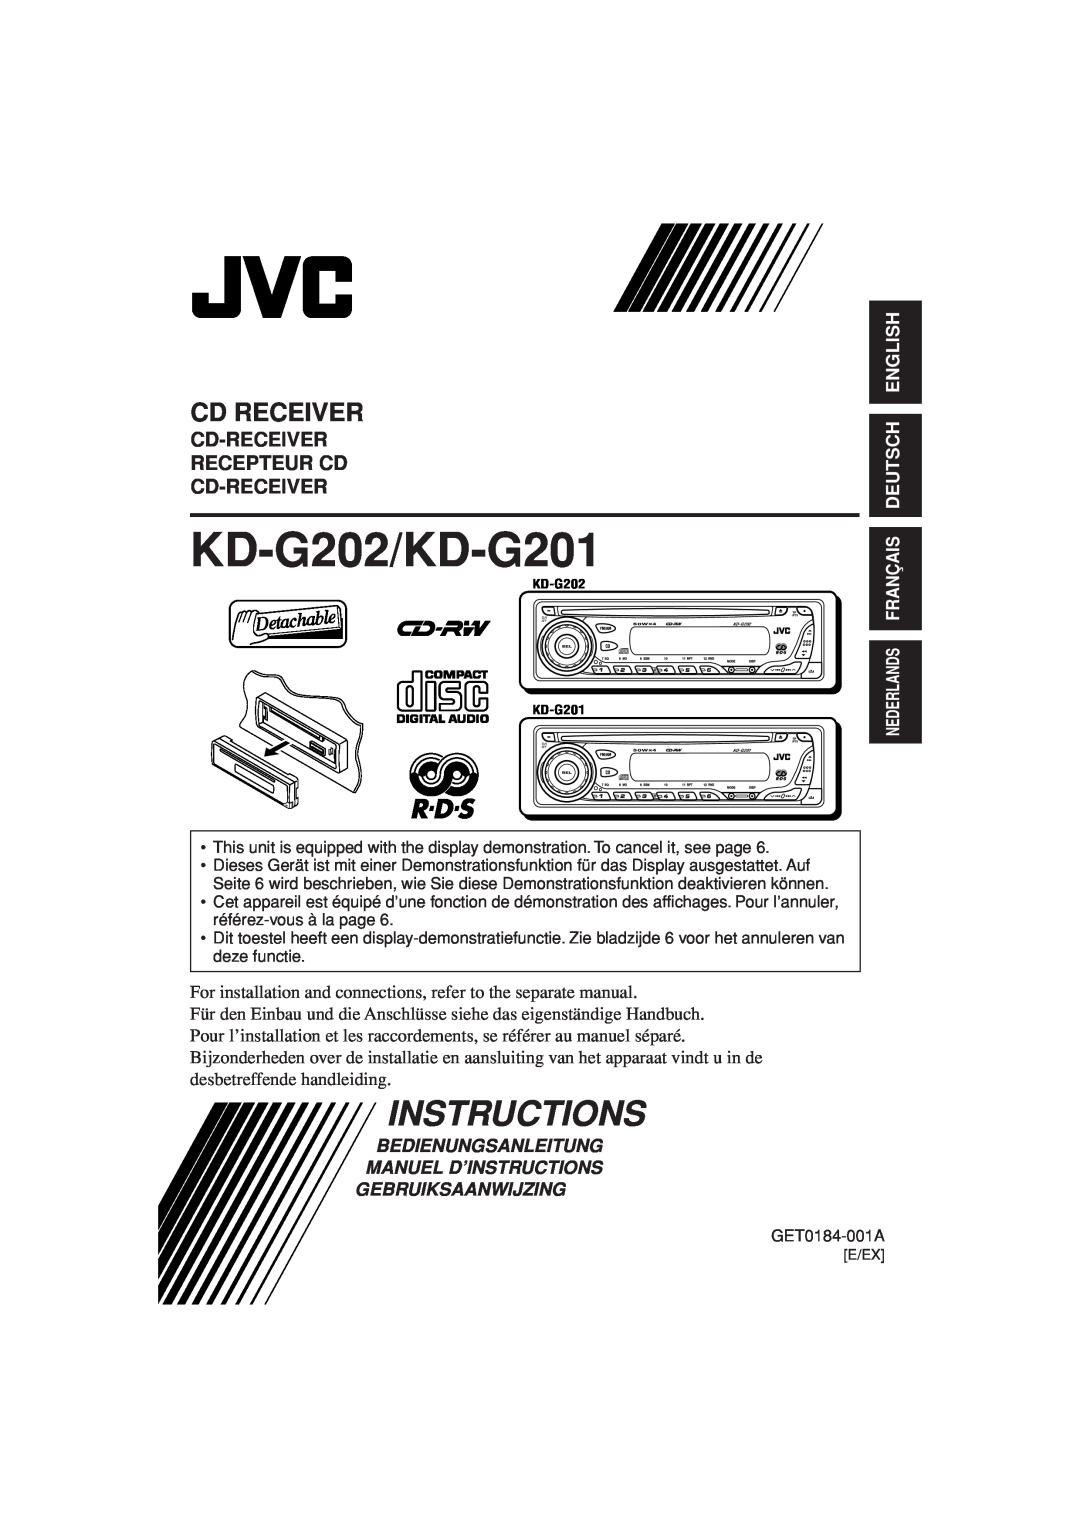 JVC manual KD-G202/KD-G201, Instructions, Cd Receiver, Cd-Receiver Recepteur Cd Cd-Receiver, English Deutsch 